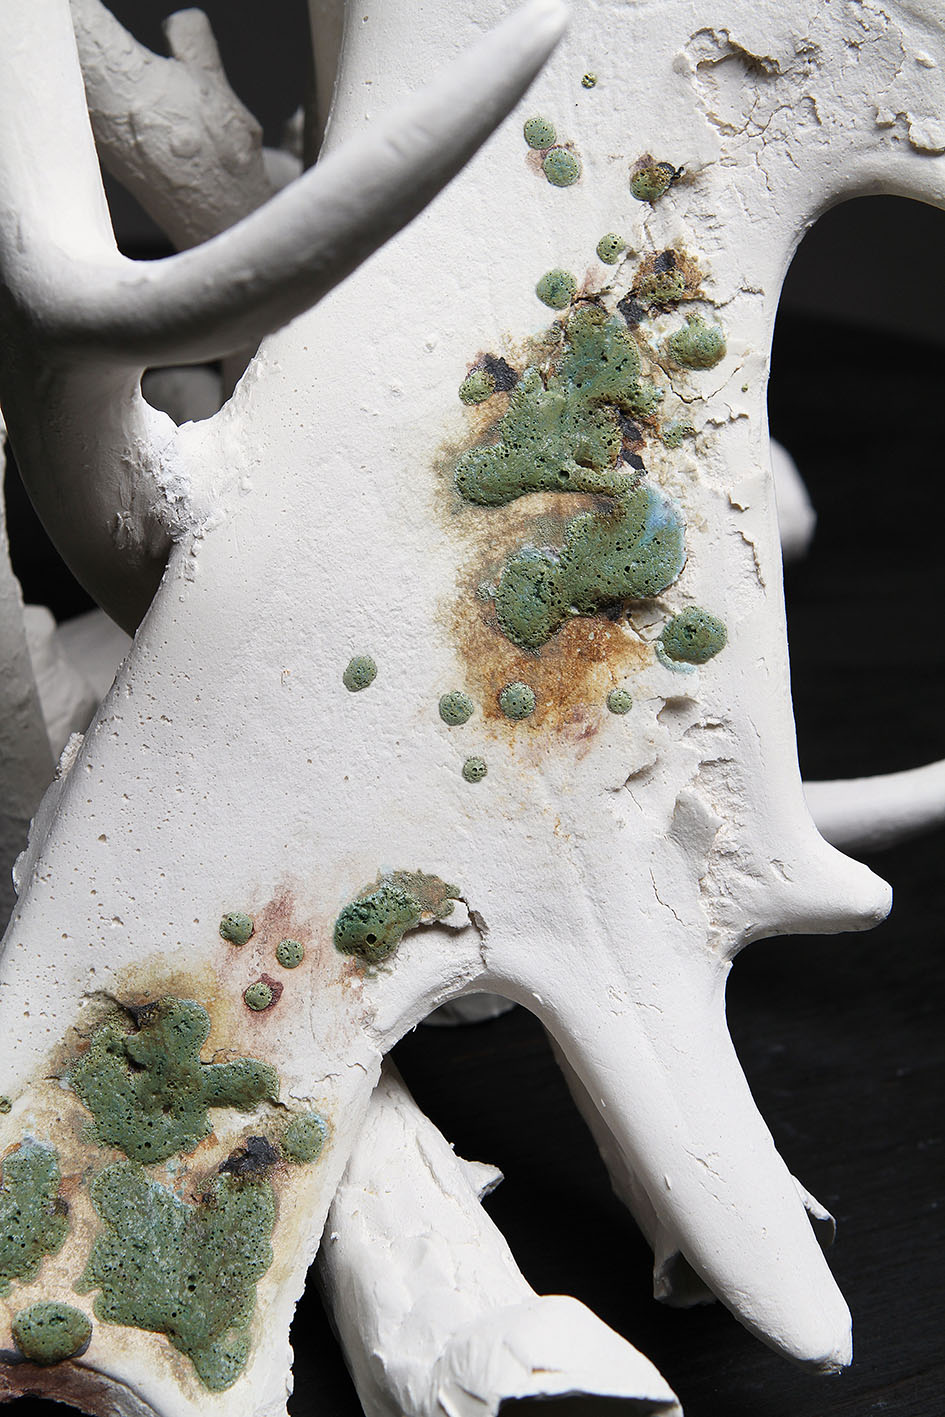 slip cast porcelain project ephemeral death decay regeneration remains bones antlers branches lauren downton contemporary artist